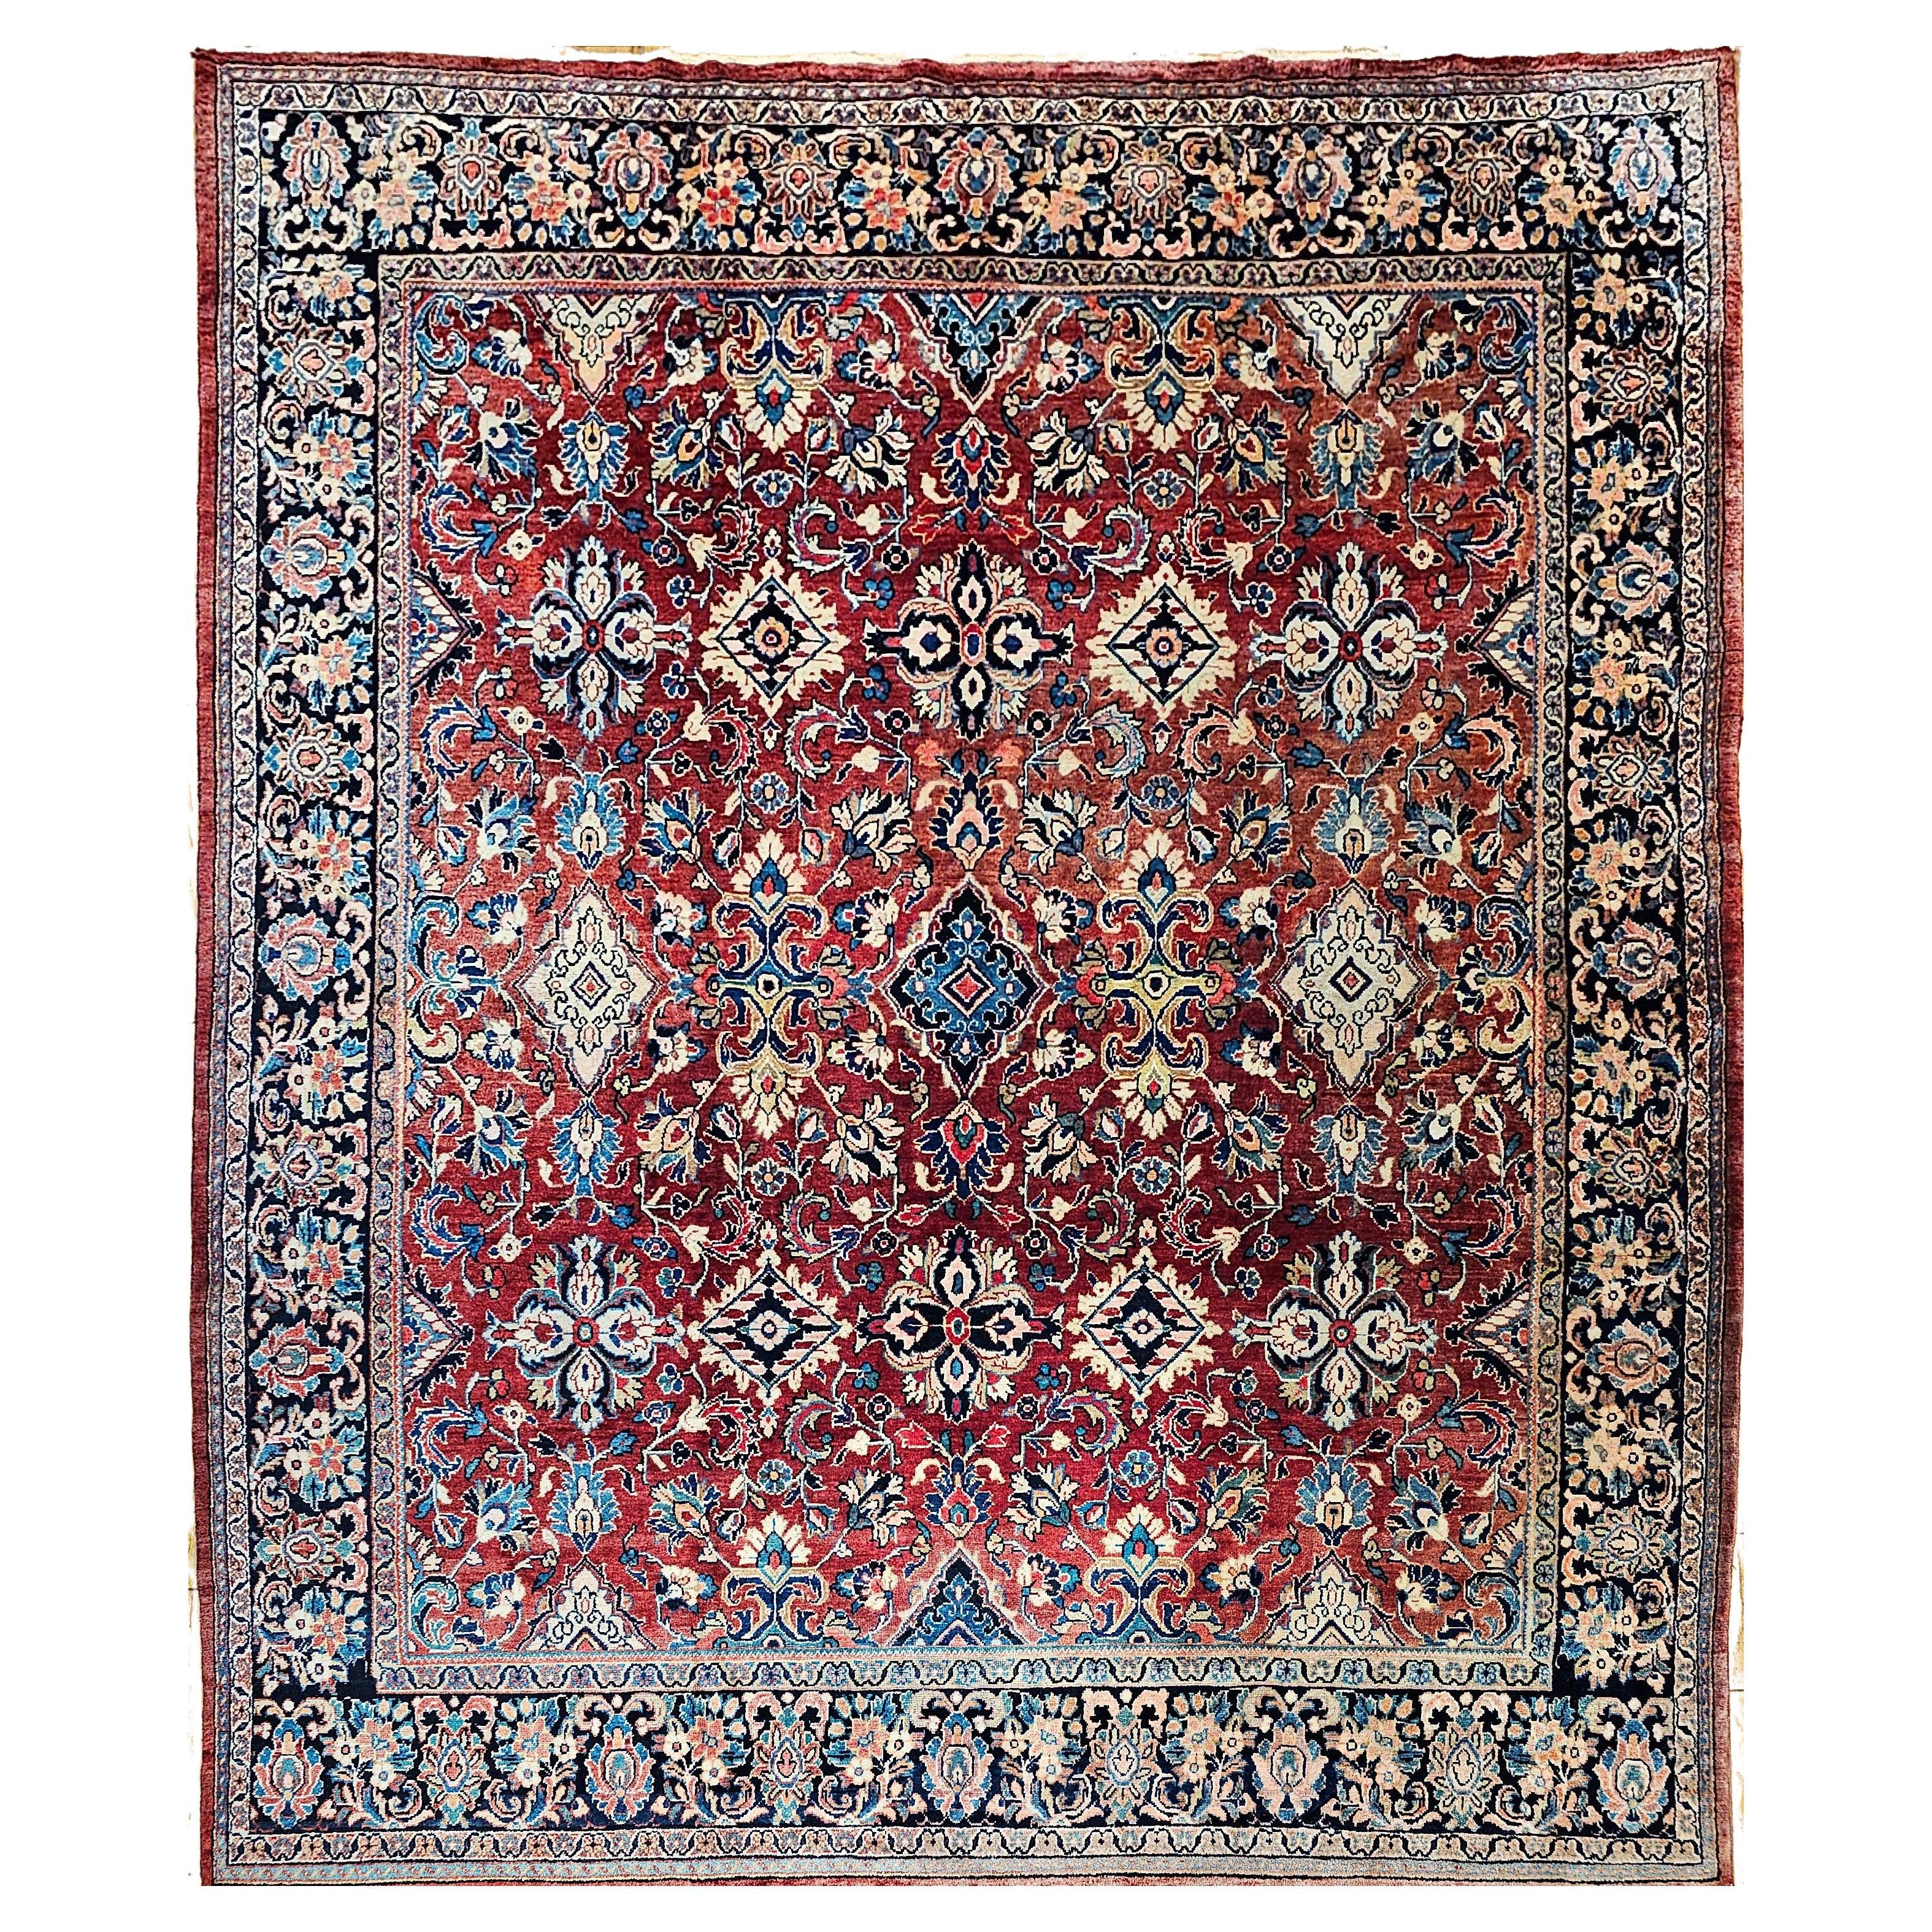 Taille de la pièce Persian Mahal Sultanabad avec motif floral sur toute la surface rouge, bleu marine